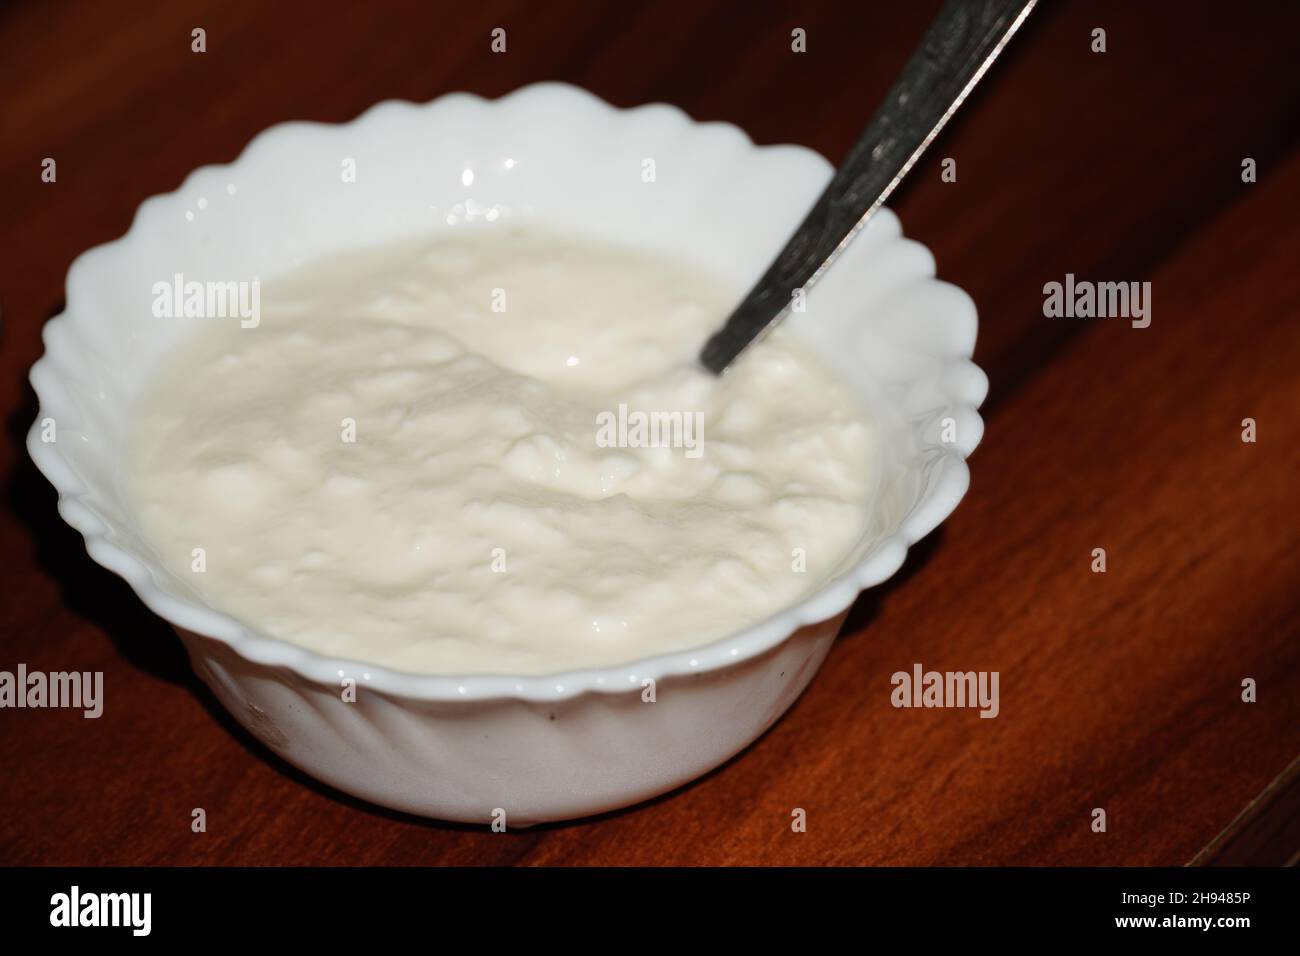 Quark (Indien) – Quark ist ein traditionelles Joghurt- oder fermentiertes Milchprodukt Stockfoto